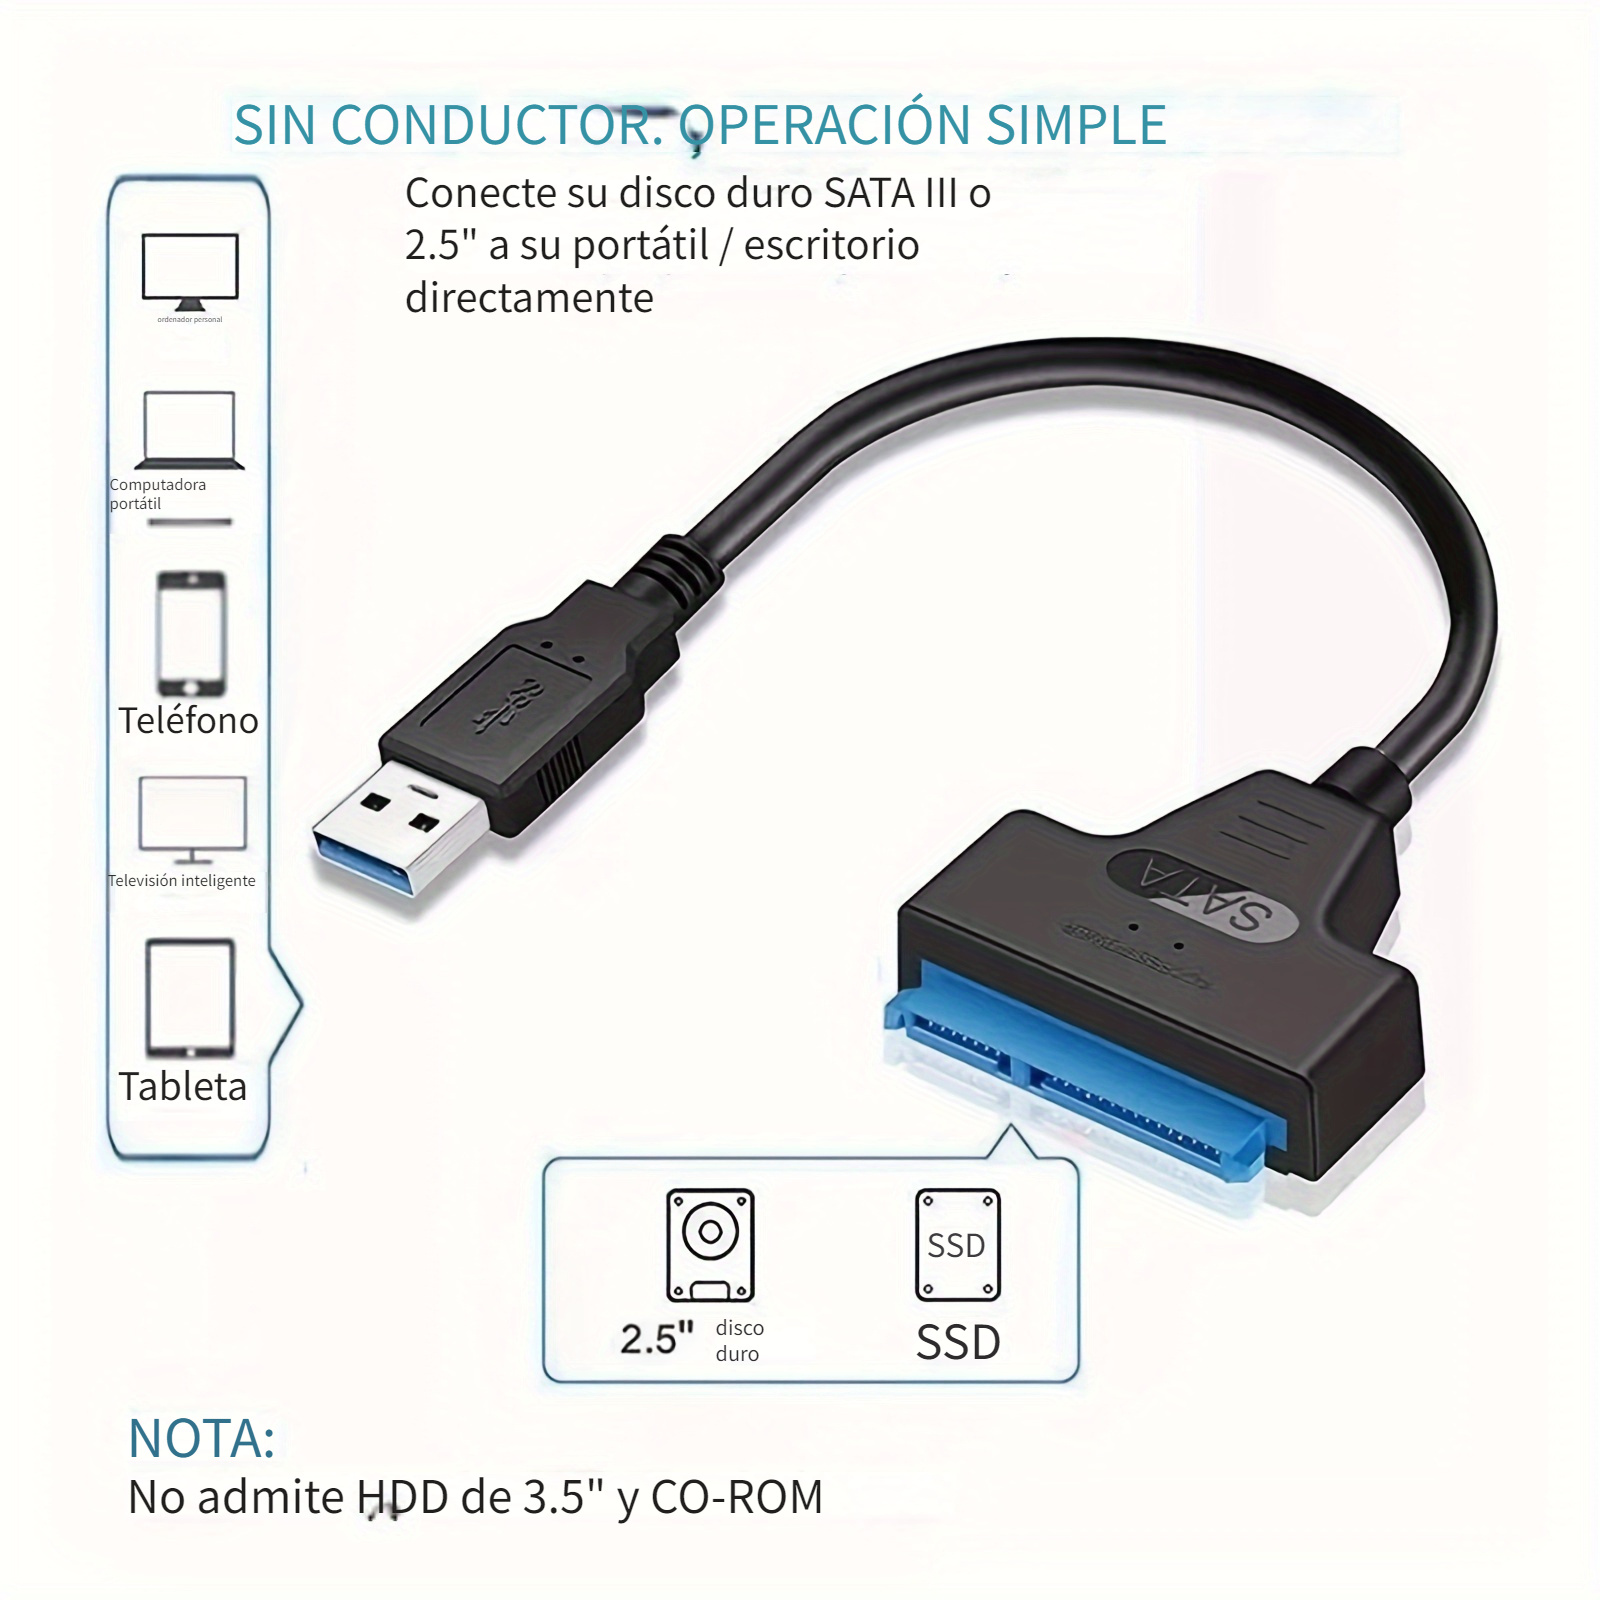 Cable SATA a USB - Adaptador de Disco Rígido USB 3.0 a SATA III de 2,5 -  Conversor Externo para Disco Duro o SSD para Transferencia de Datos